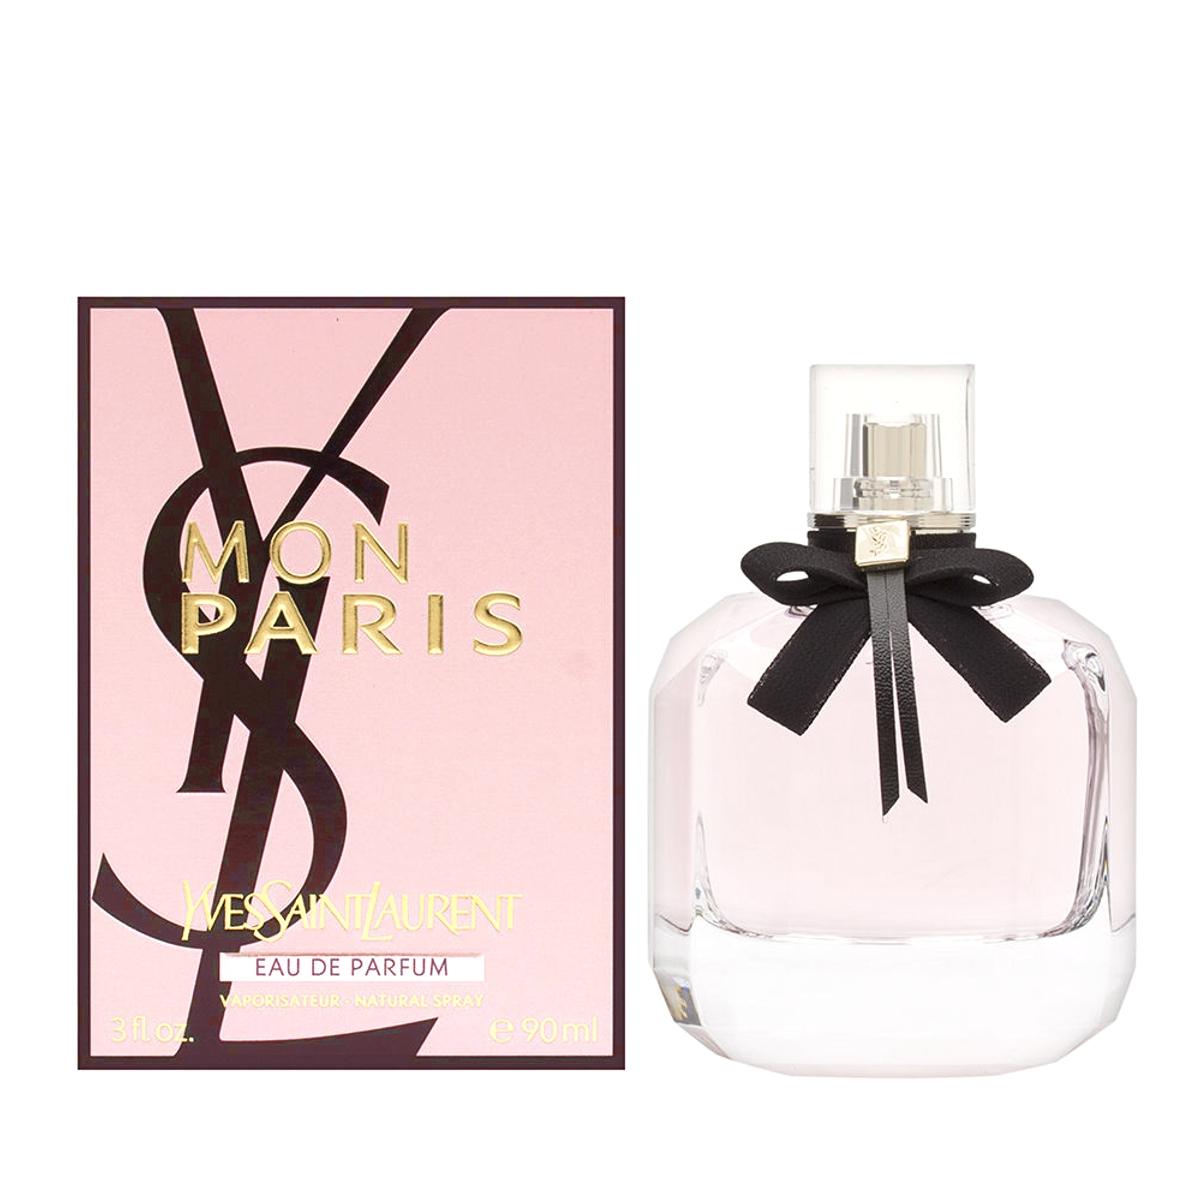 Yves Saint Laurent Ženski parfem Mon Paris 90ml